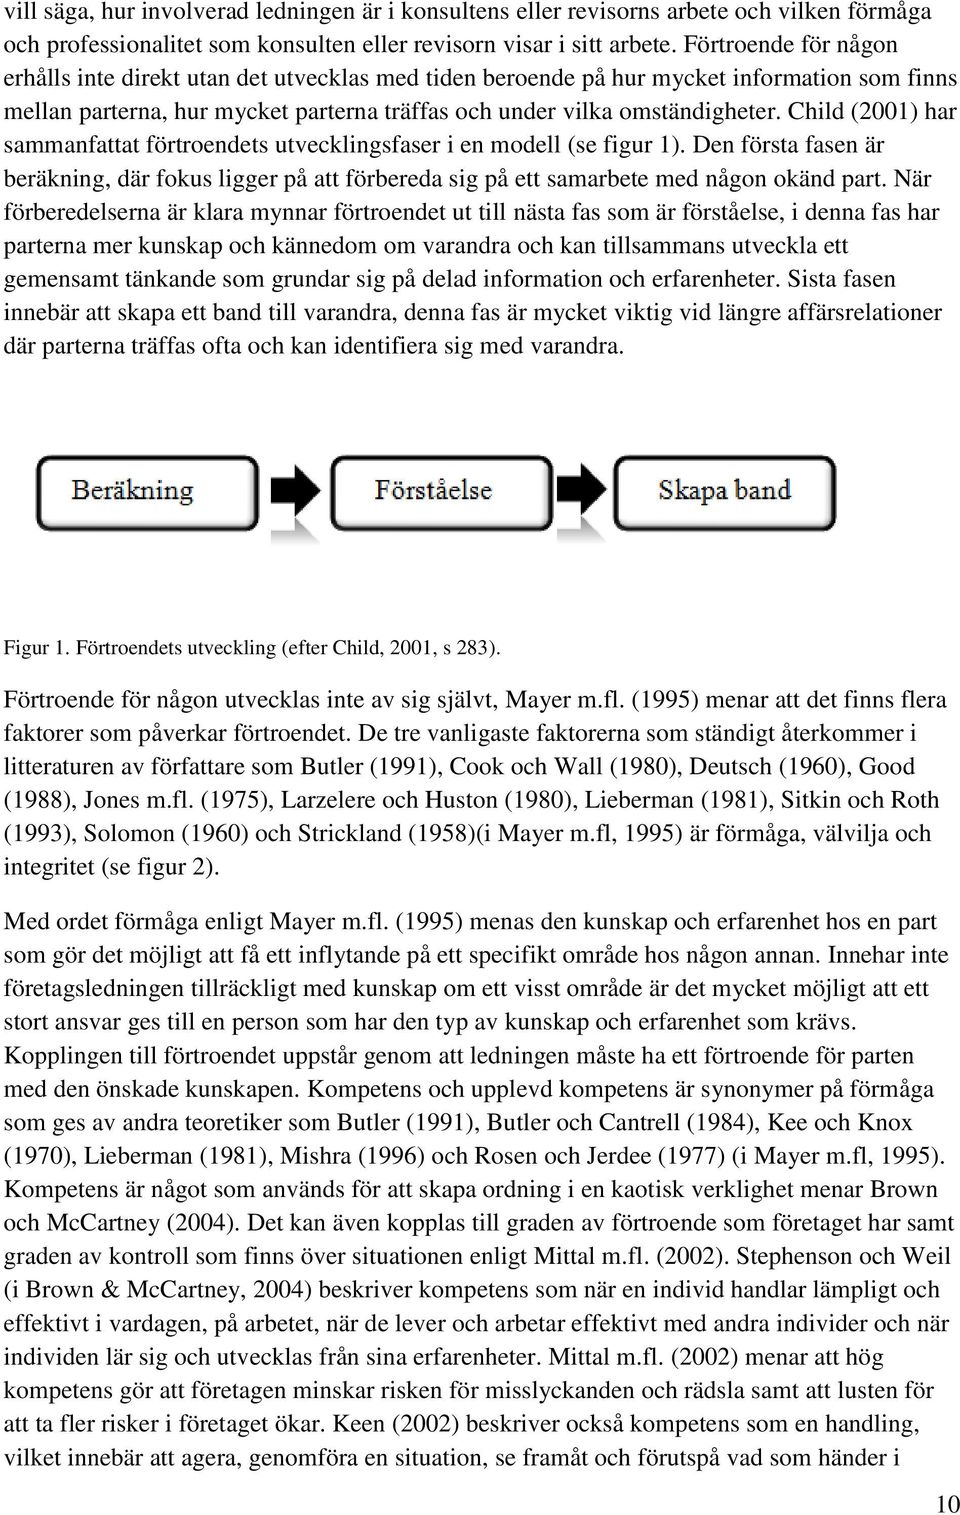 Child (2001) har sammanfattat förtroendets utvecklingsfaser i en modell (se figur 1). Den första fasen är beräkning, där fokus ligger på att förbereda sig på ett samarbete med någon okänd part.